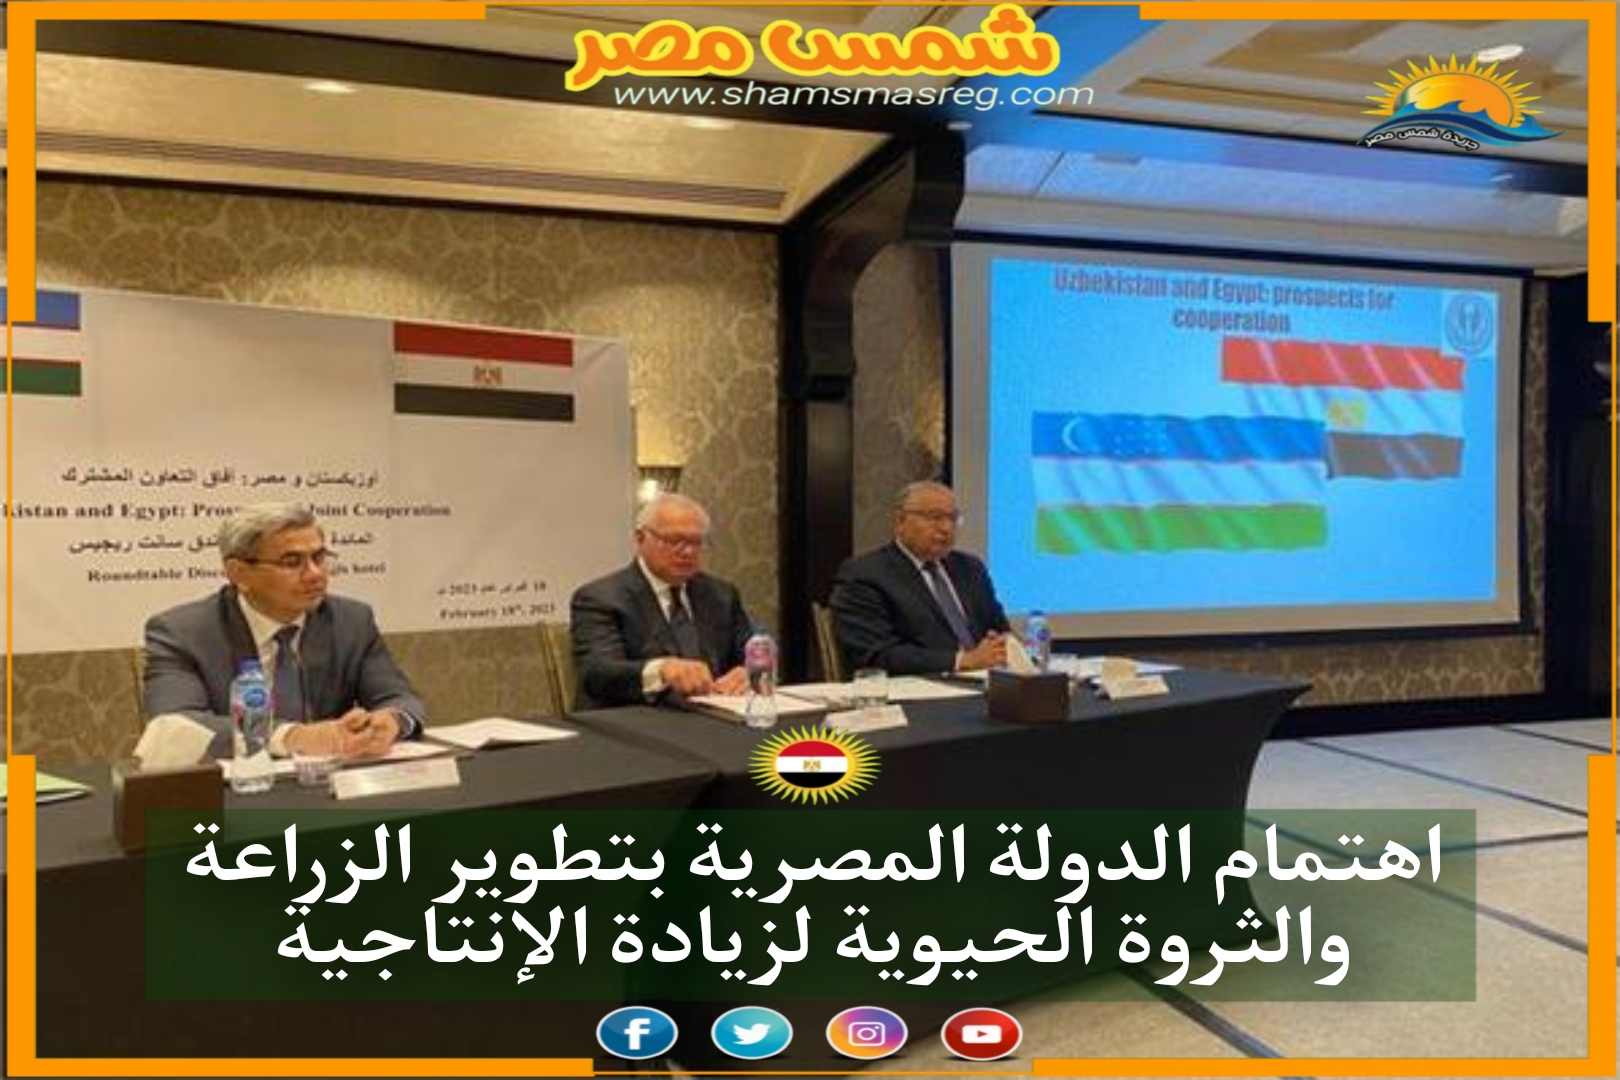 اهتمام الدولة المصرية بتطوير الزراعة والثروة الحيوية لزيادة الإنتاجية